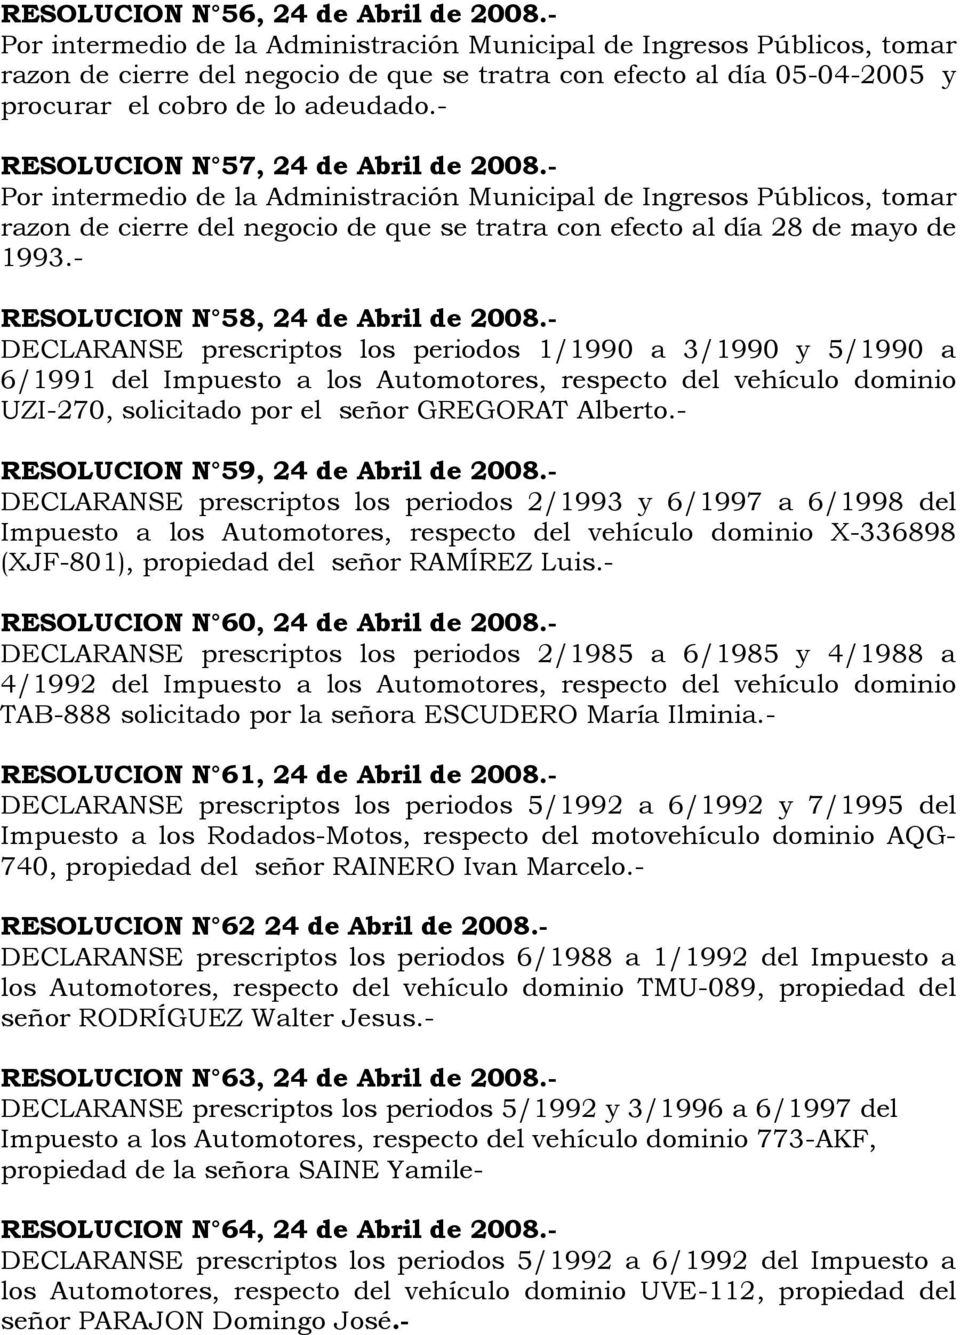 - DECLARANSE prescriptos los periodos 1/1990 a 3/1990 y 5/1990 a 6/1991 del Impuesto a los Automotores, respecto del vehículo dominio UZI-270, solicitado por el señor GREGORAT Alberto.